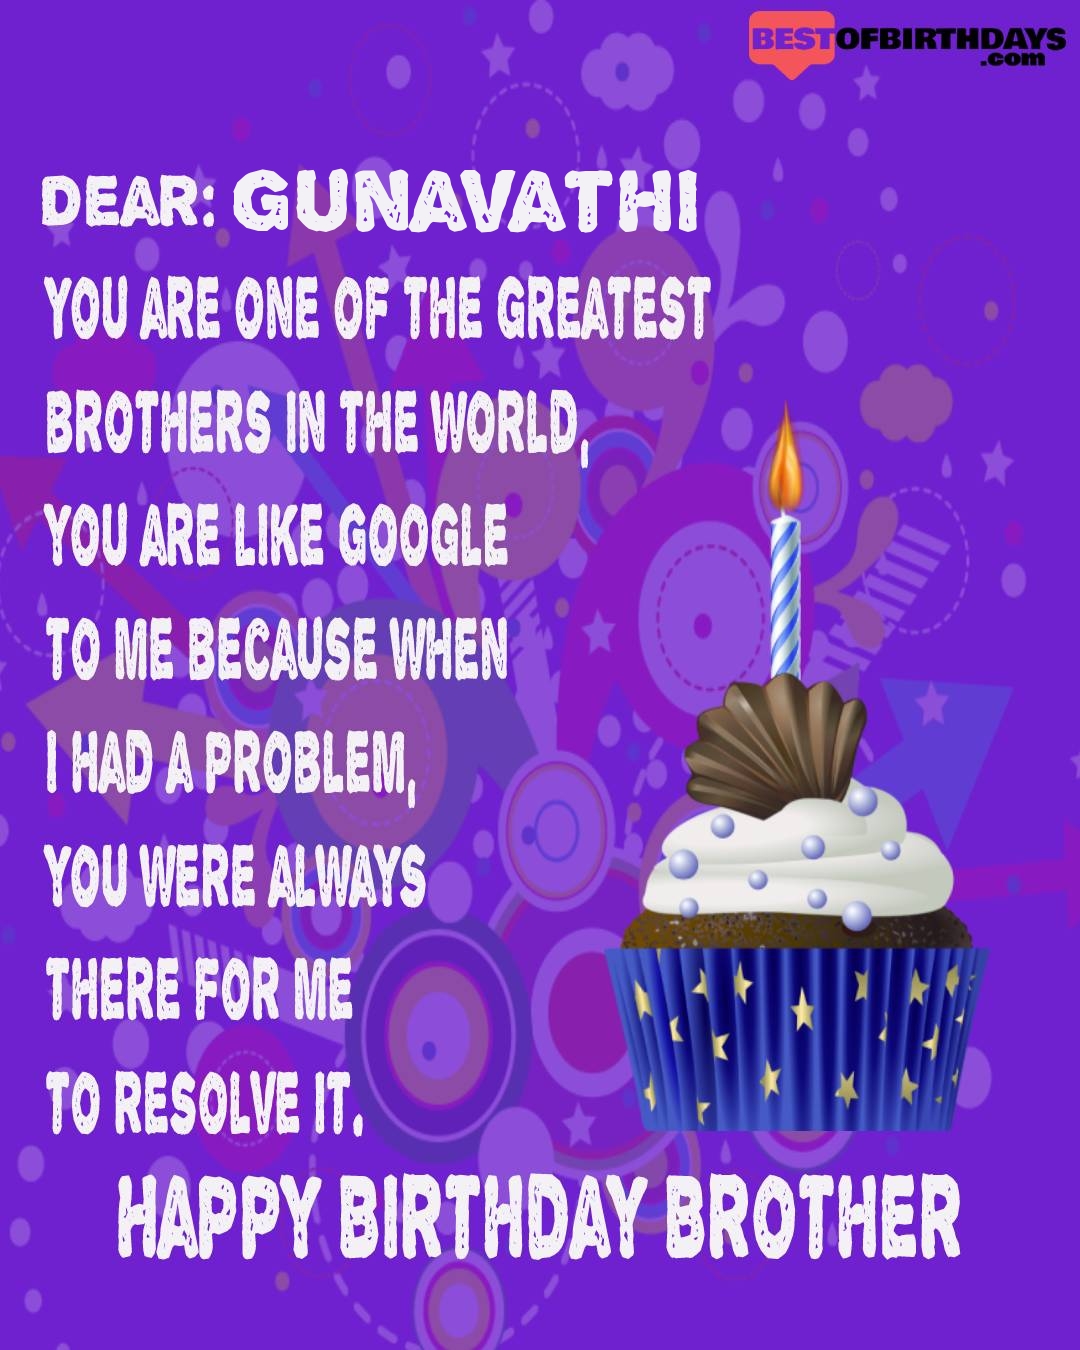 Happy birthday gunavathi bhai brother bro